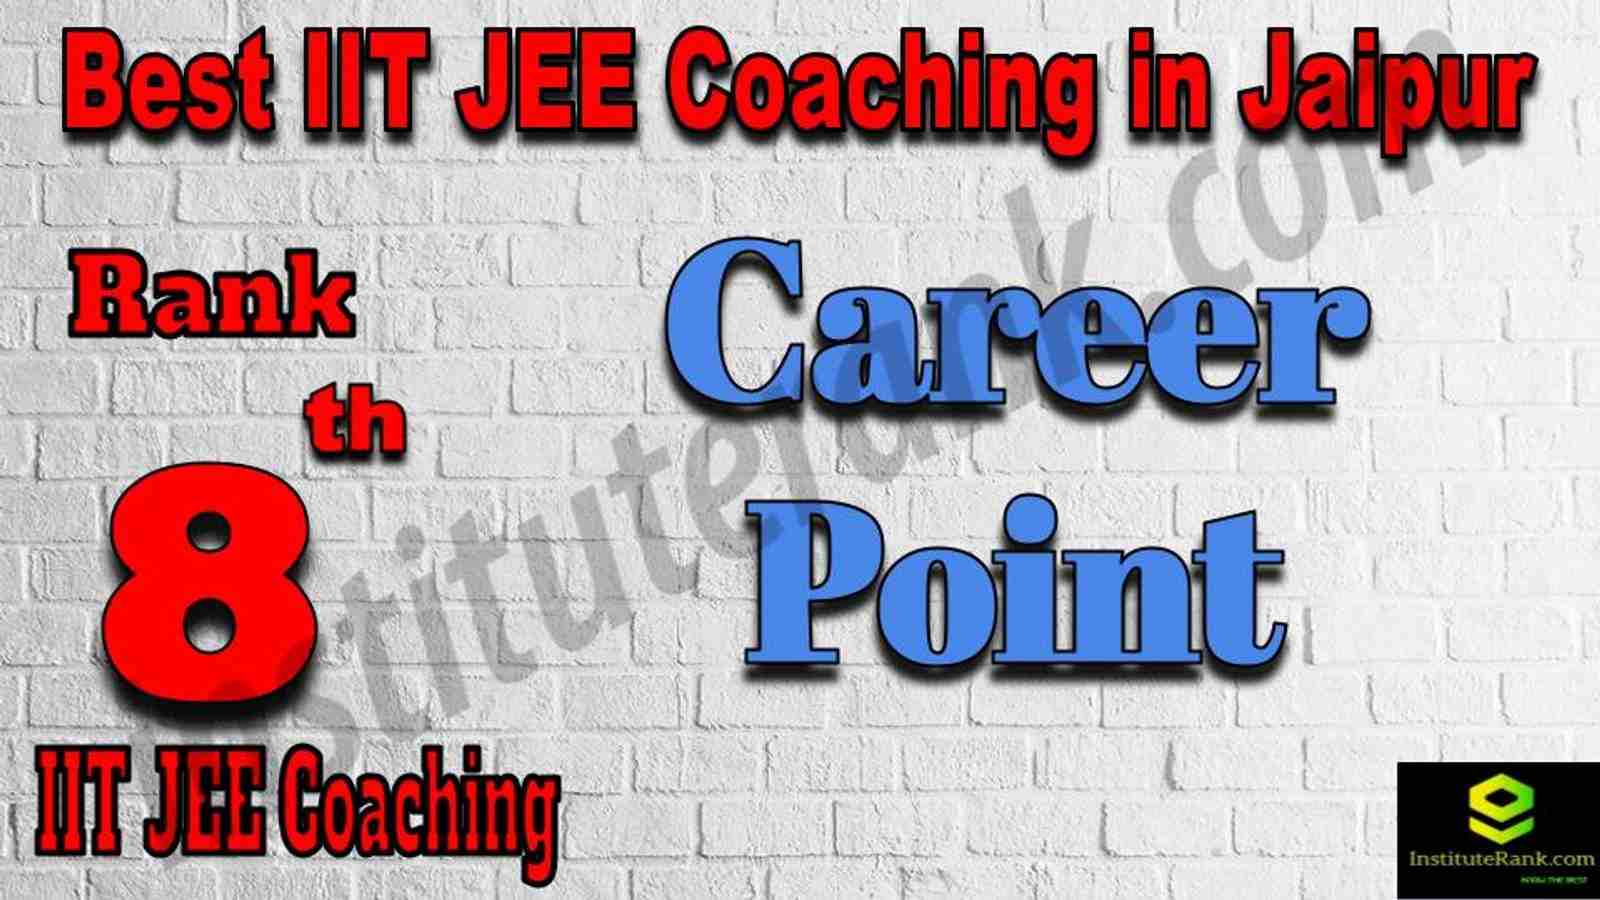 8th Best IIT JEE Coaching in Jaipur